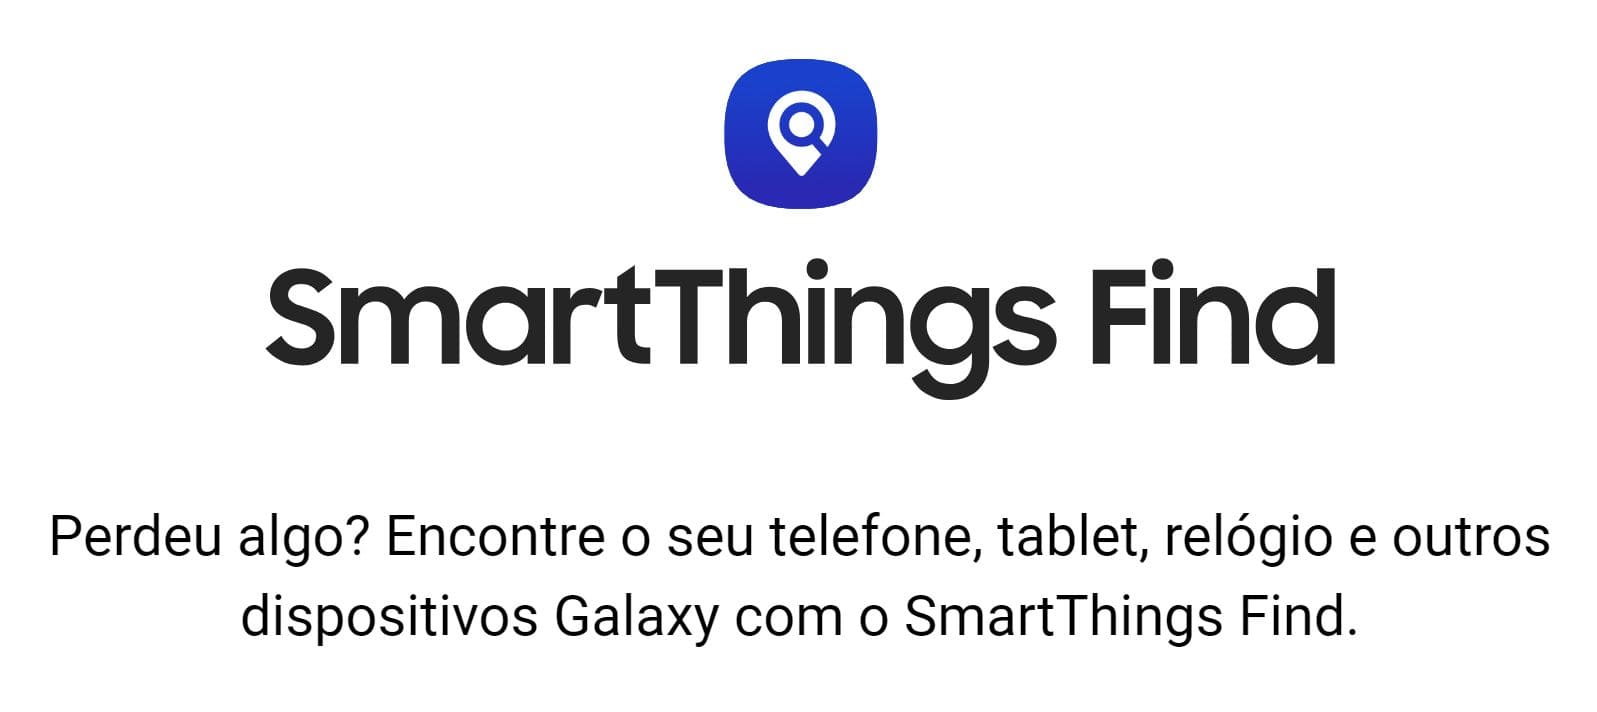 Tela Inicial do SmartThings Finds da Samsung